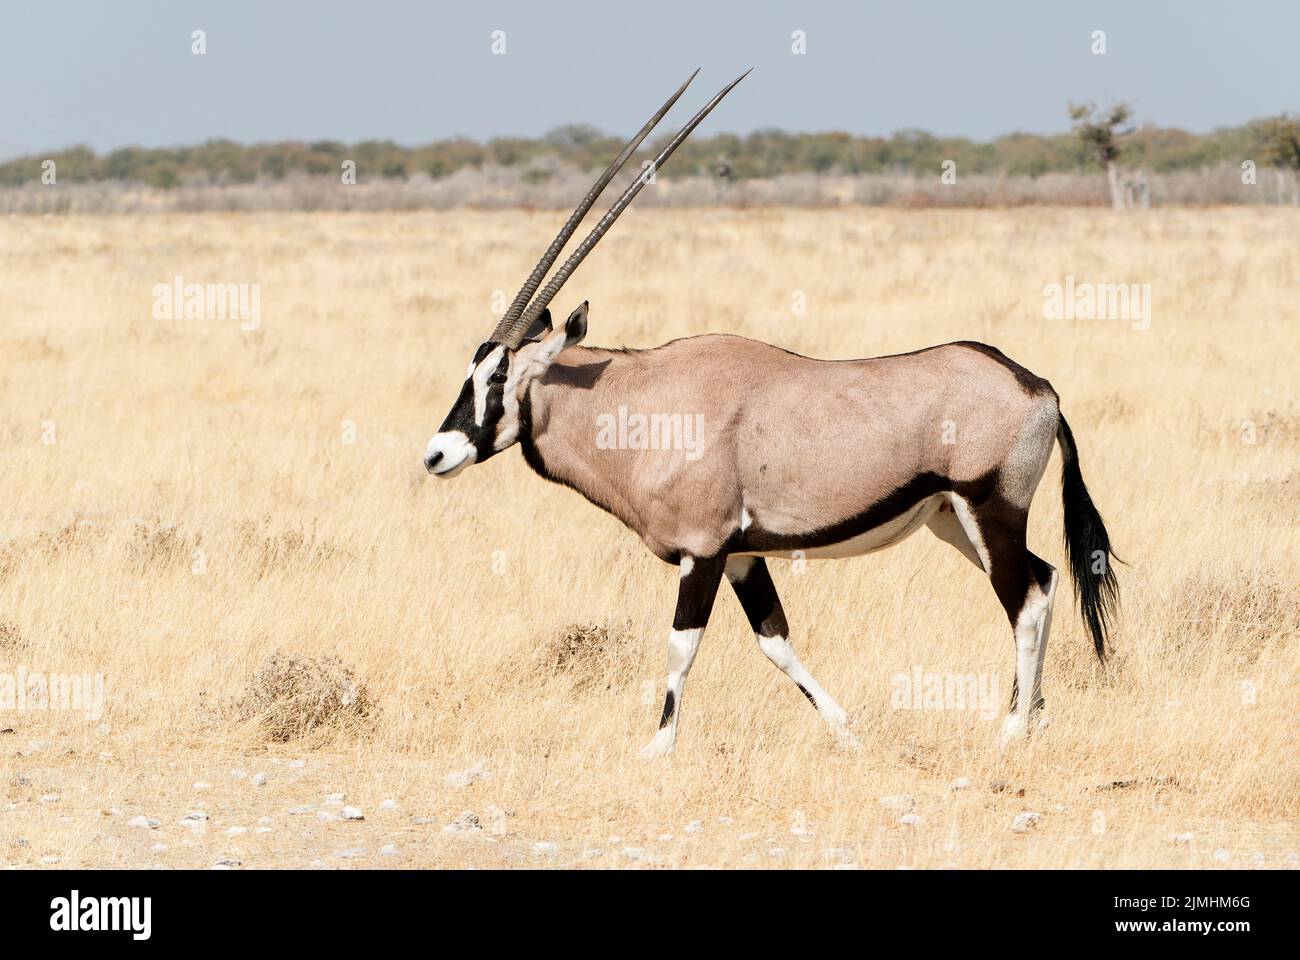 gemsbok ou oryx sud-africain, Oryx gazella, adulte unique marchant dans une végétation courte, Parc national d'Etosha, Namibie Banque D'Images